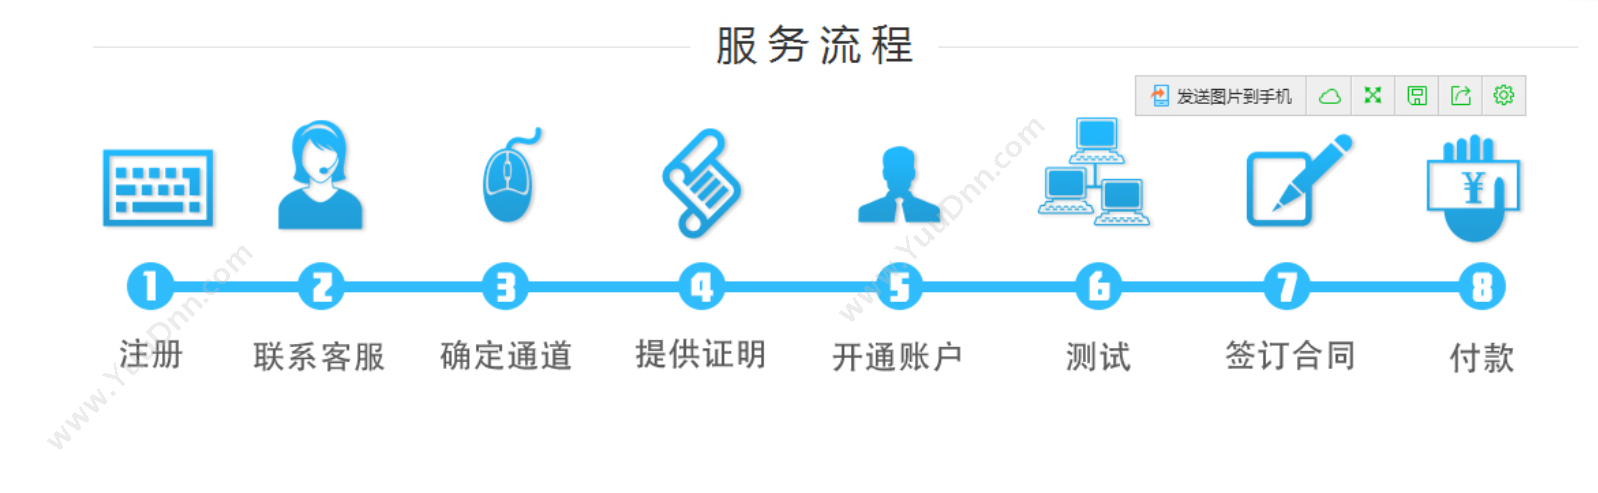 广州亿淼信息技术有限公司 亿淼短信平台 营销系统